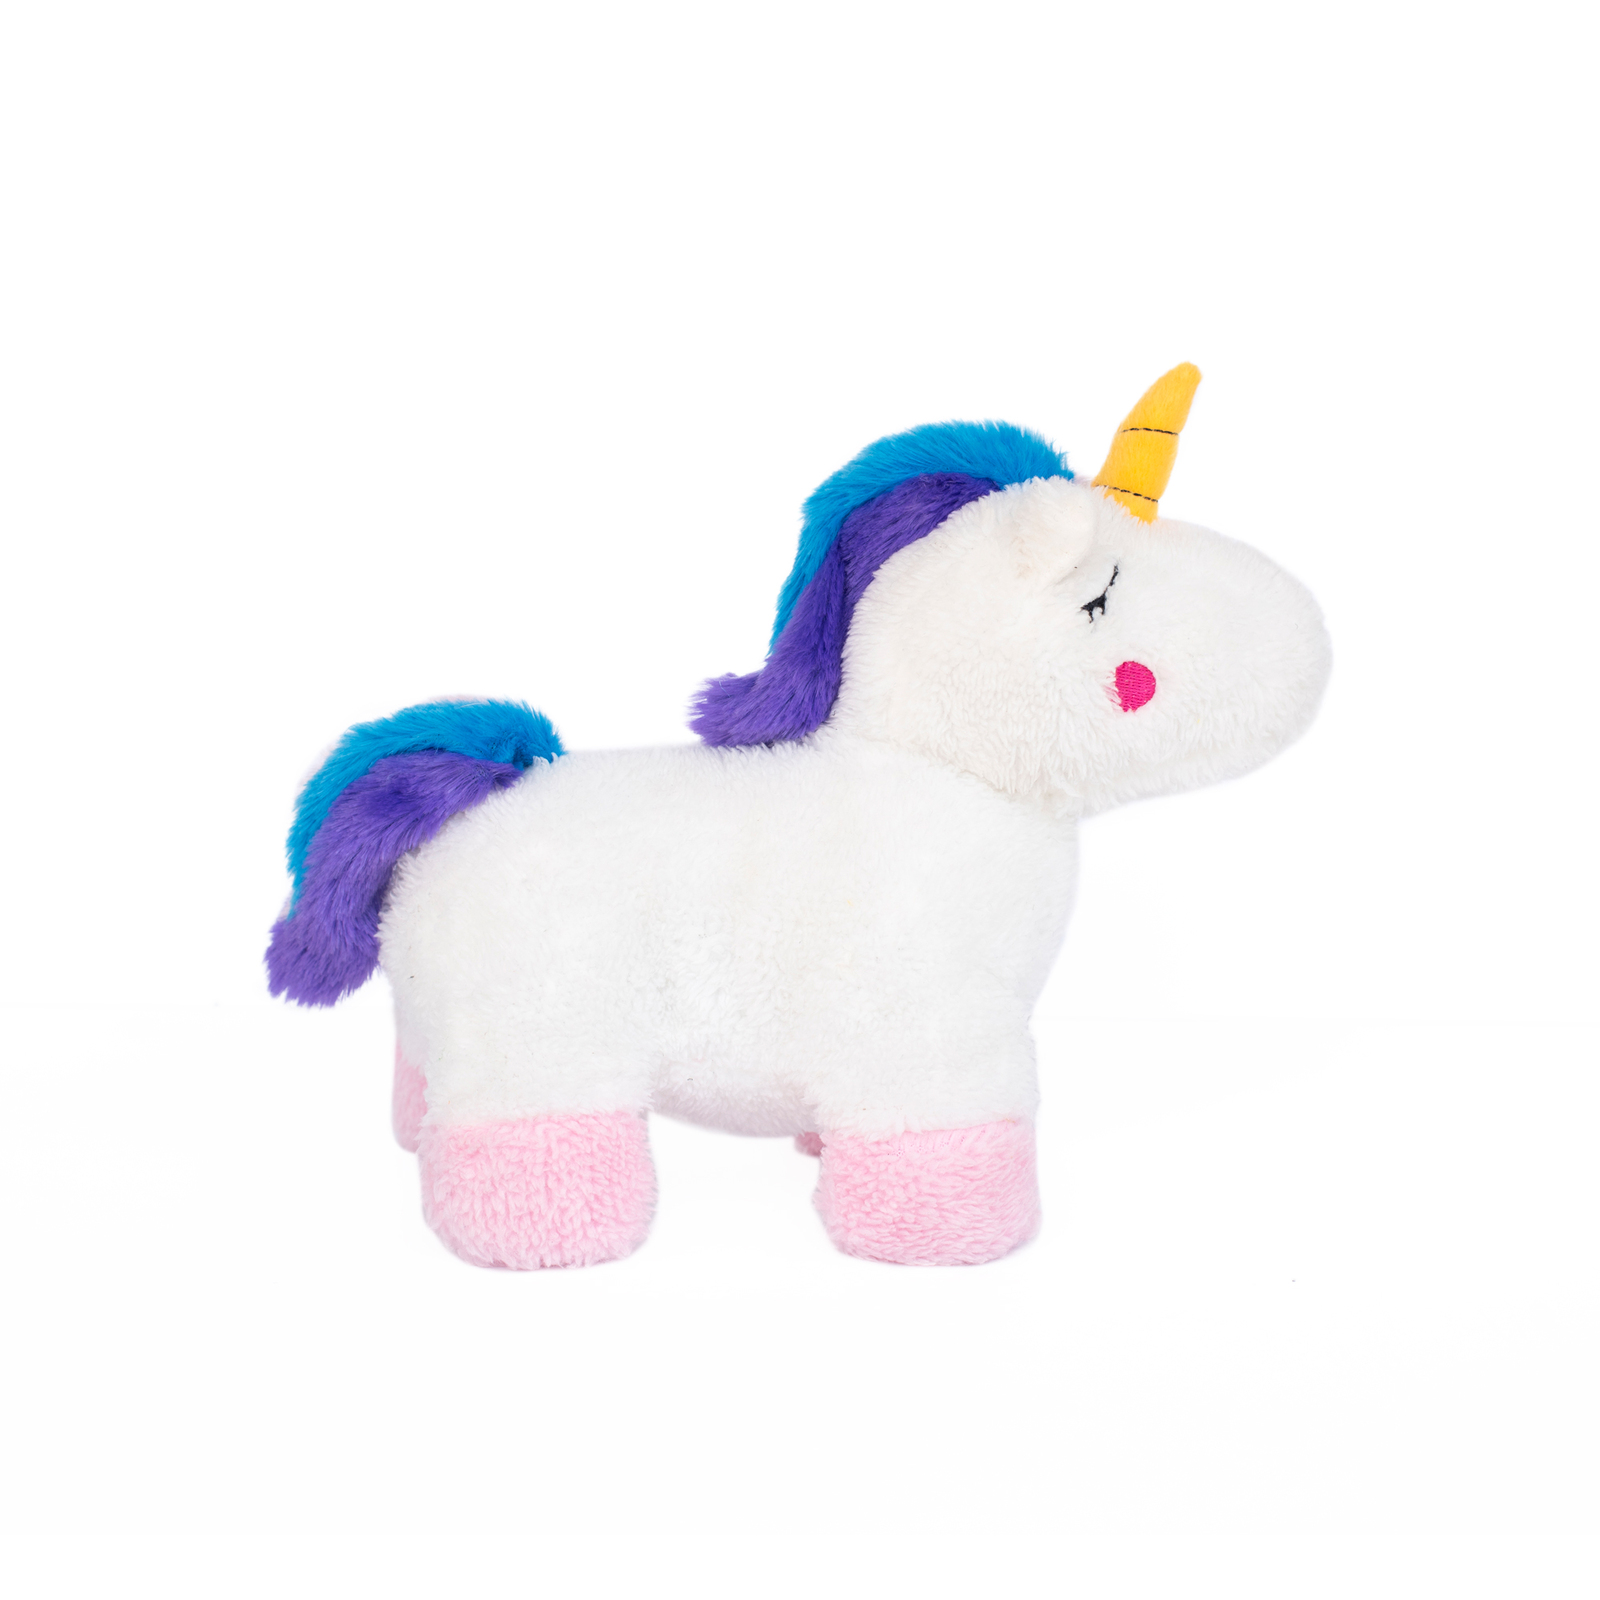 Zippy Paws Snugglerz Plush Squeaker Dog Toy - Charlotte the Unicorn image 0